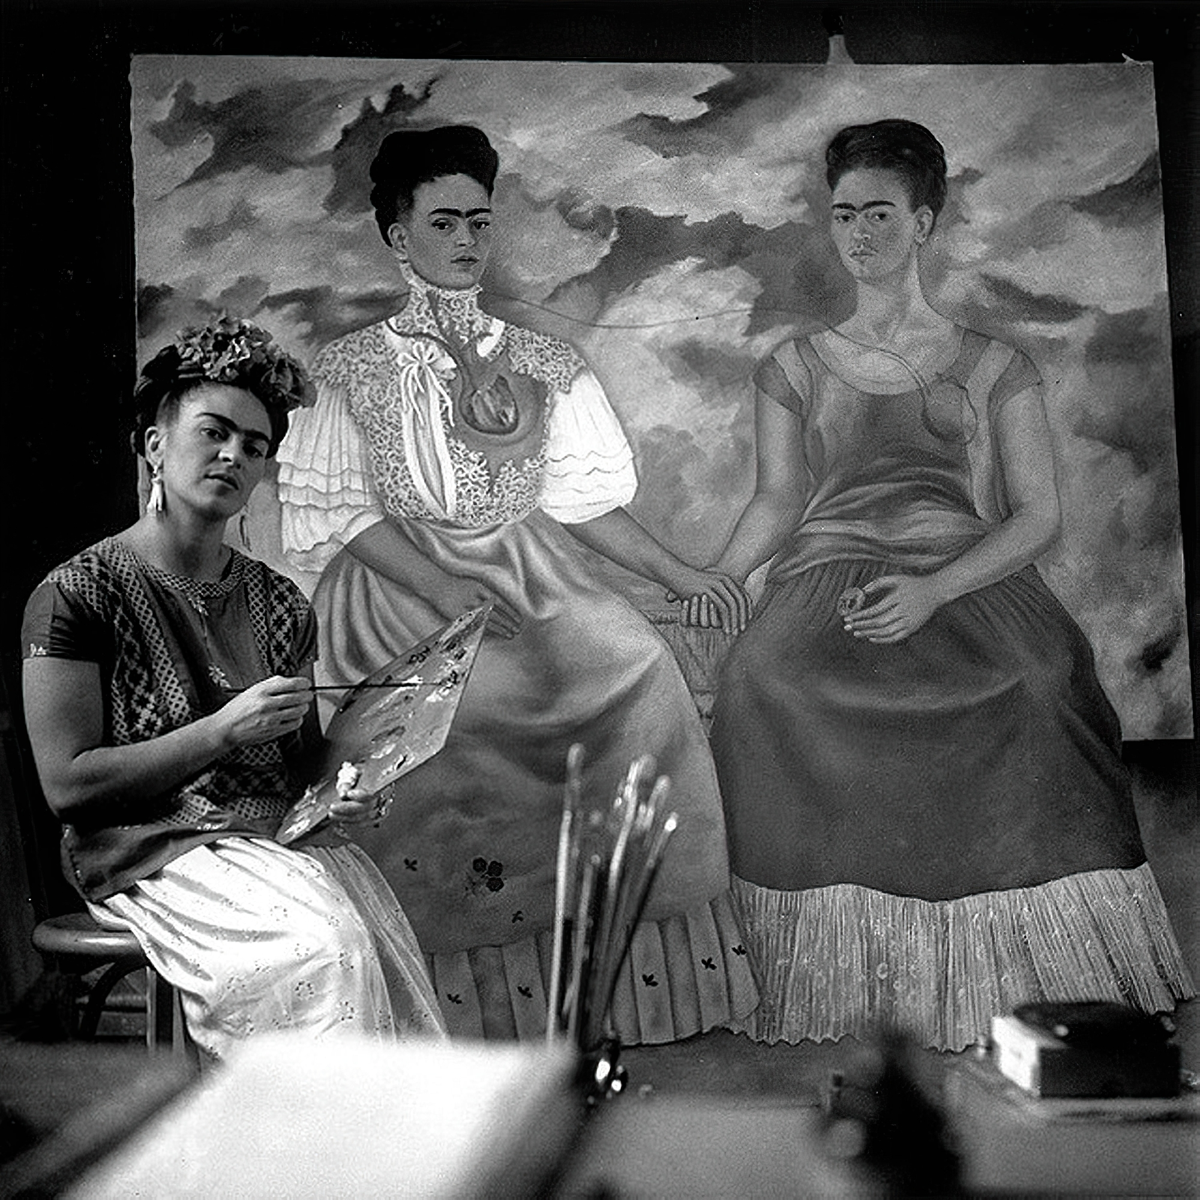 ¿A quién pertenecen los derechos de marca de la pintora Frida Kahlo?